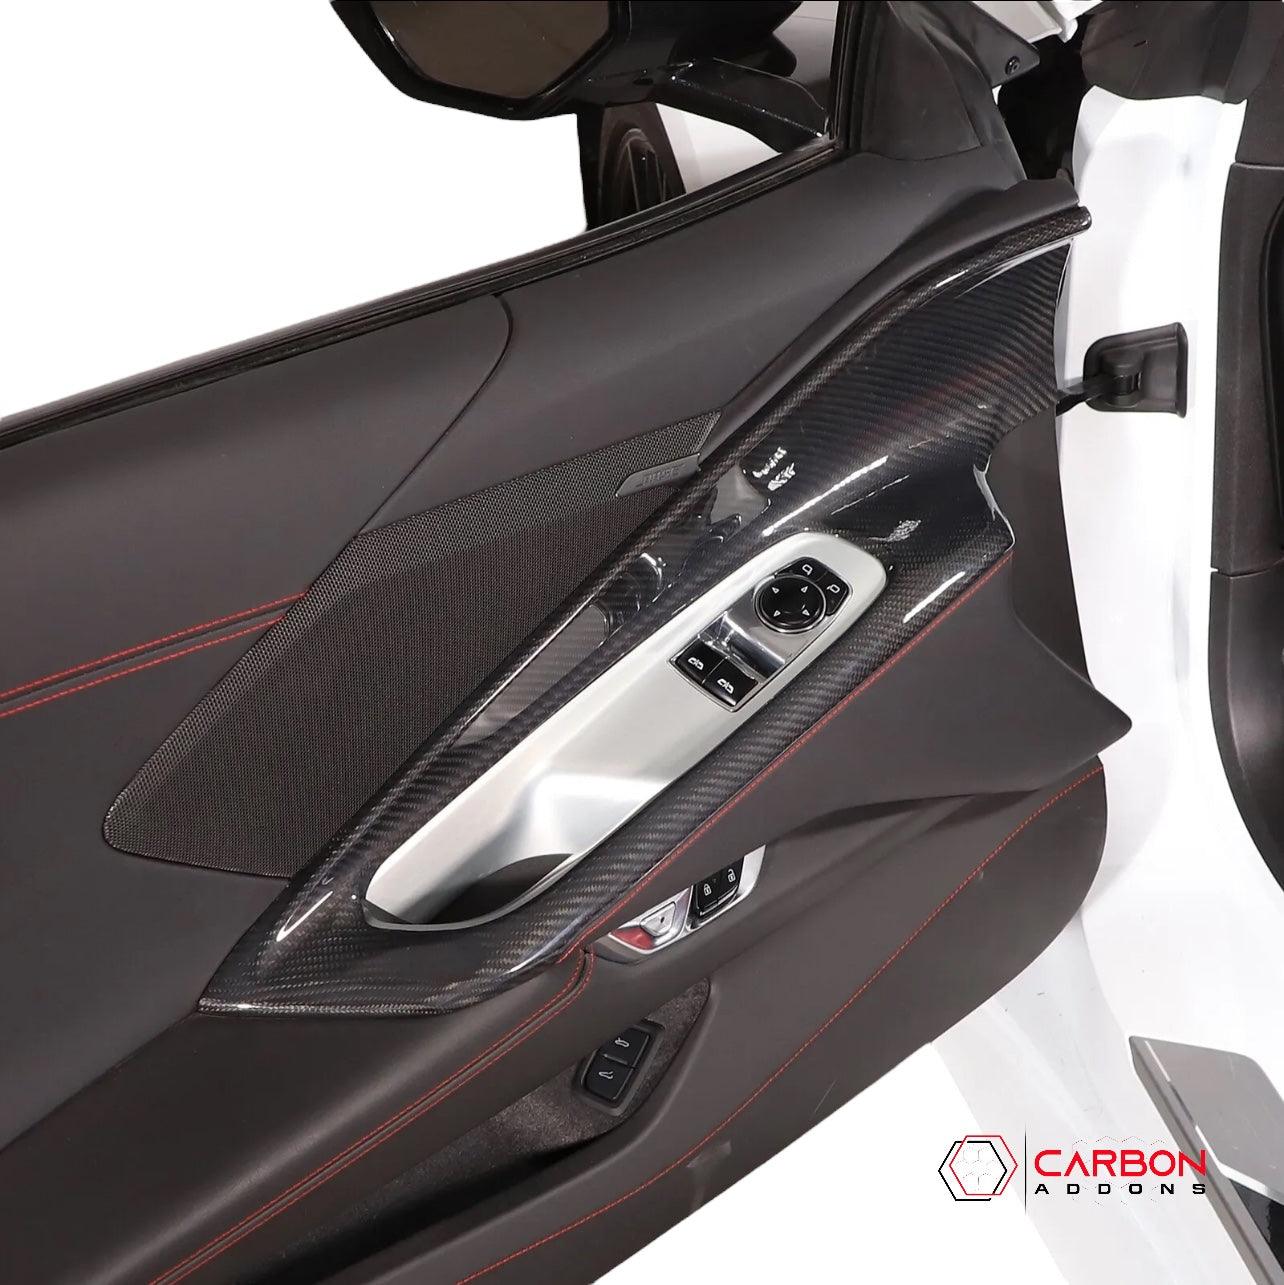 [2pcs Set] C8 Corvette 2020+ Real Carbon Fiber Window Switch Outer Trim Panel Frame Cover - carbonaddons Carbon Fiber Parts, Accessories, Upgrades, Mods